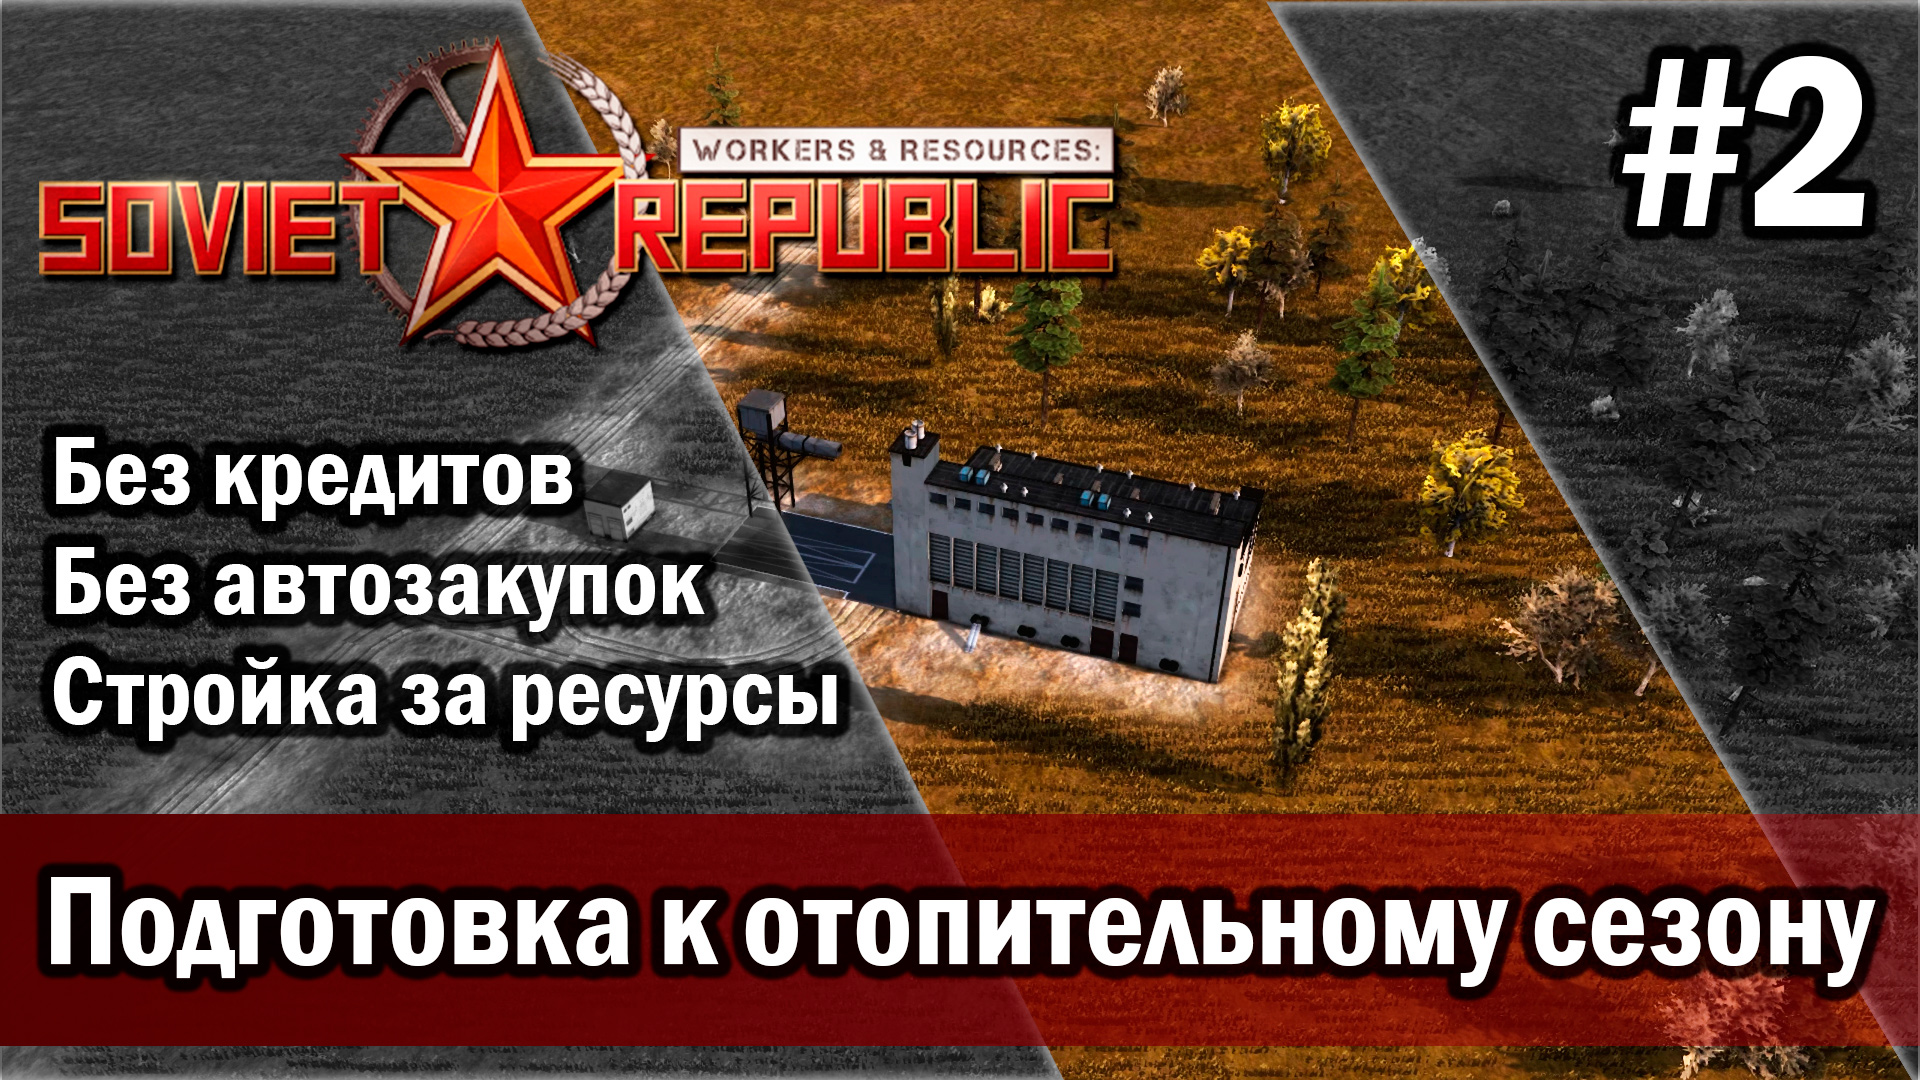 Workers & Resources Soviet Republic на тяжелом 3 сезон 2 серия